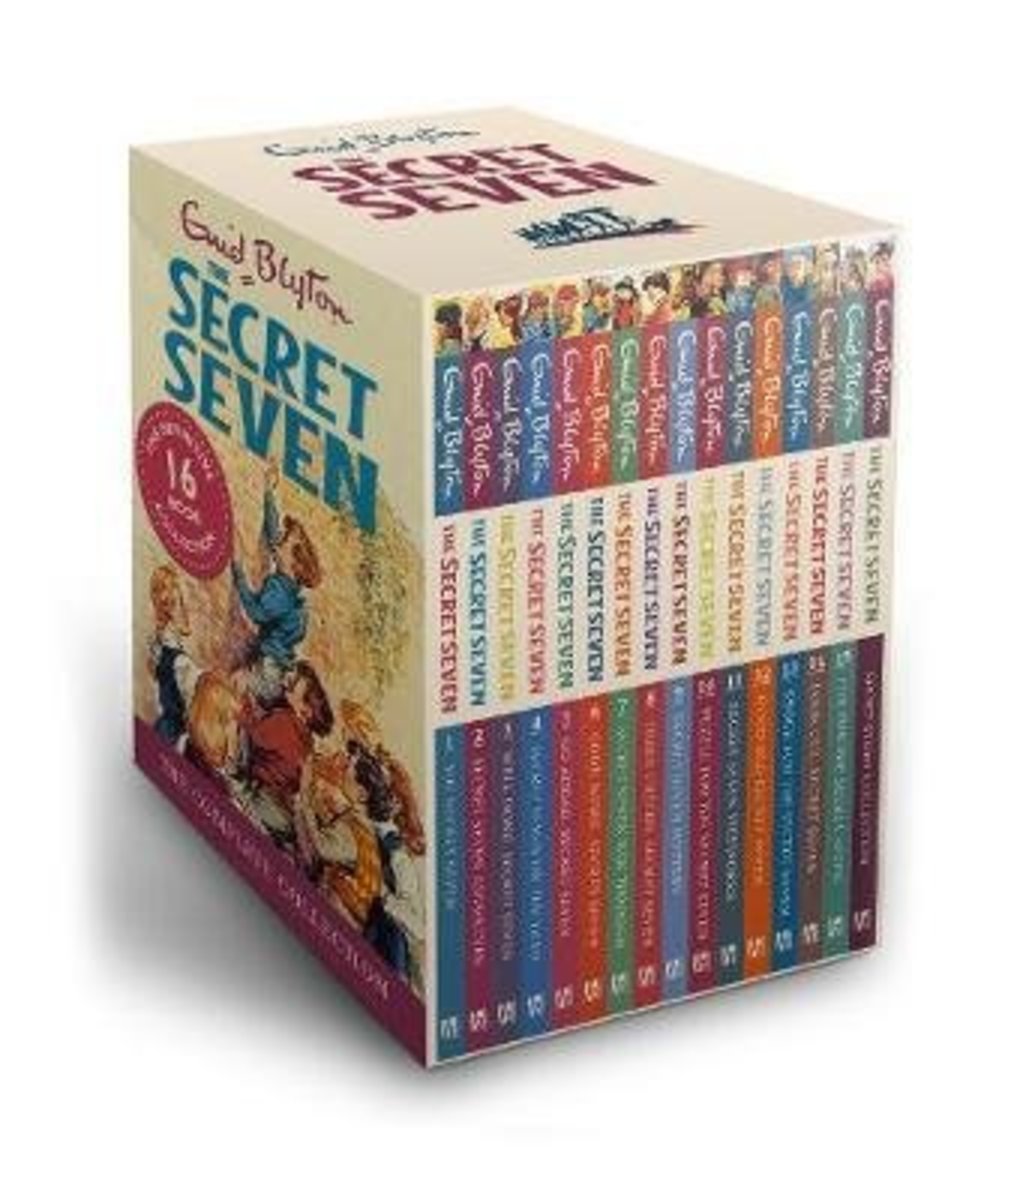 【正版正貨】Secret Seven: The Secret Seven Complete Collection (1-16)